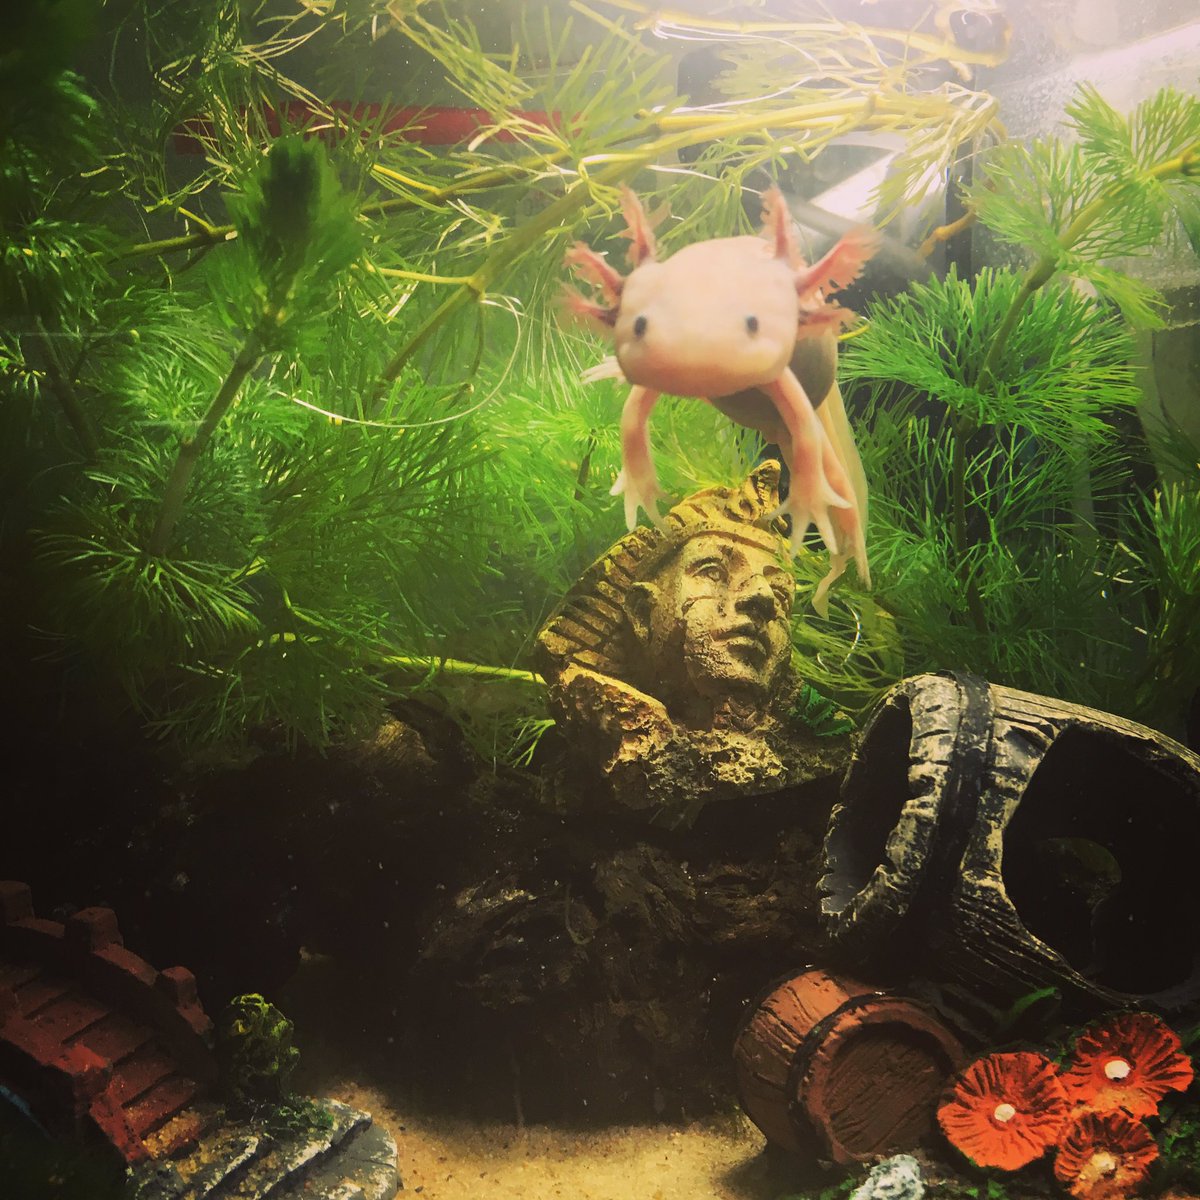 ウルルン 水草 かじってしまうのが癖うぱ ˊ ˋ ウーパールーパー ウルルン Axolotl ウーパー アホロートル 平野ノラ バブル メキシコサラマンダー リューシスティック 可愛い サラマンダー Cute サンショウウオ 水槽 T Co